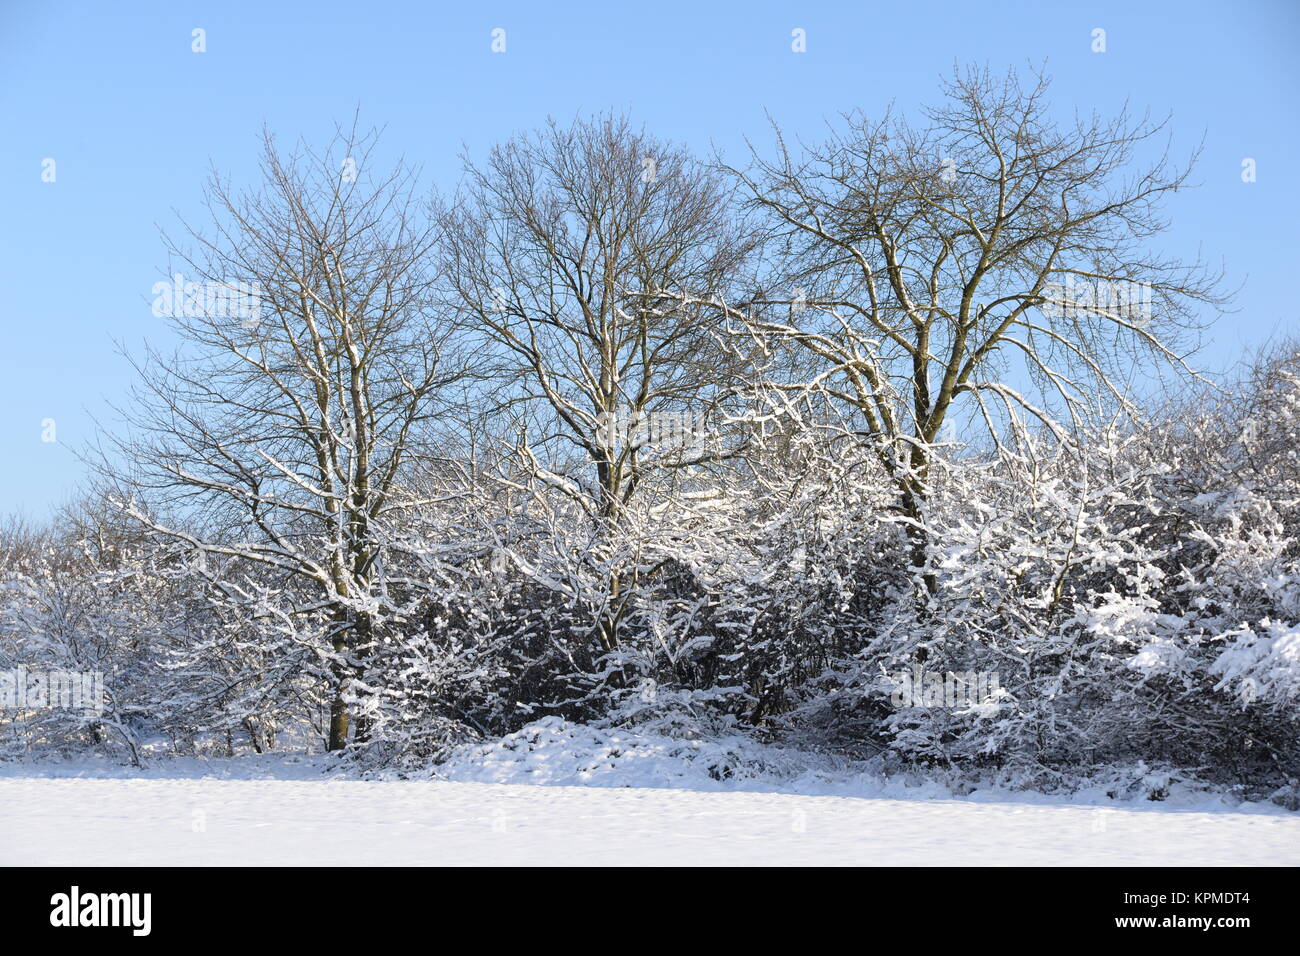 winter, schnee, kalt, kälte, baum, bäume, strauch, sträucher, busch, büsche, feld, acker, landschaft Stock Photo